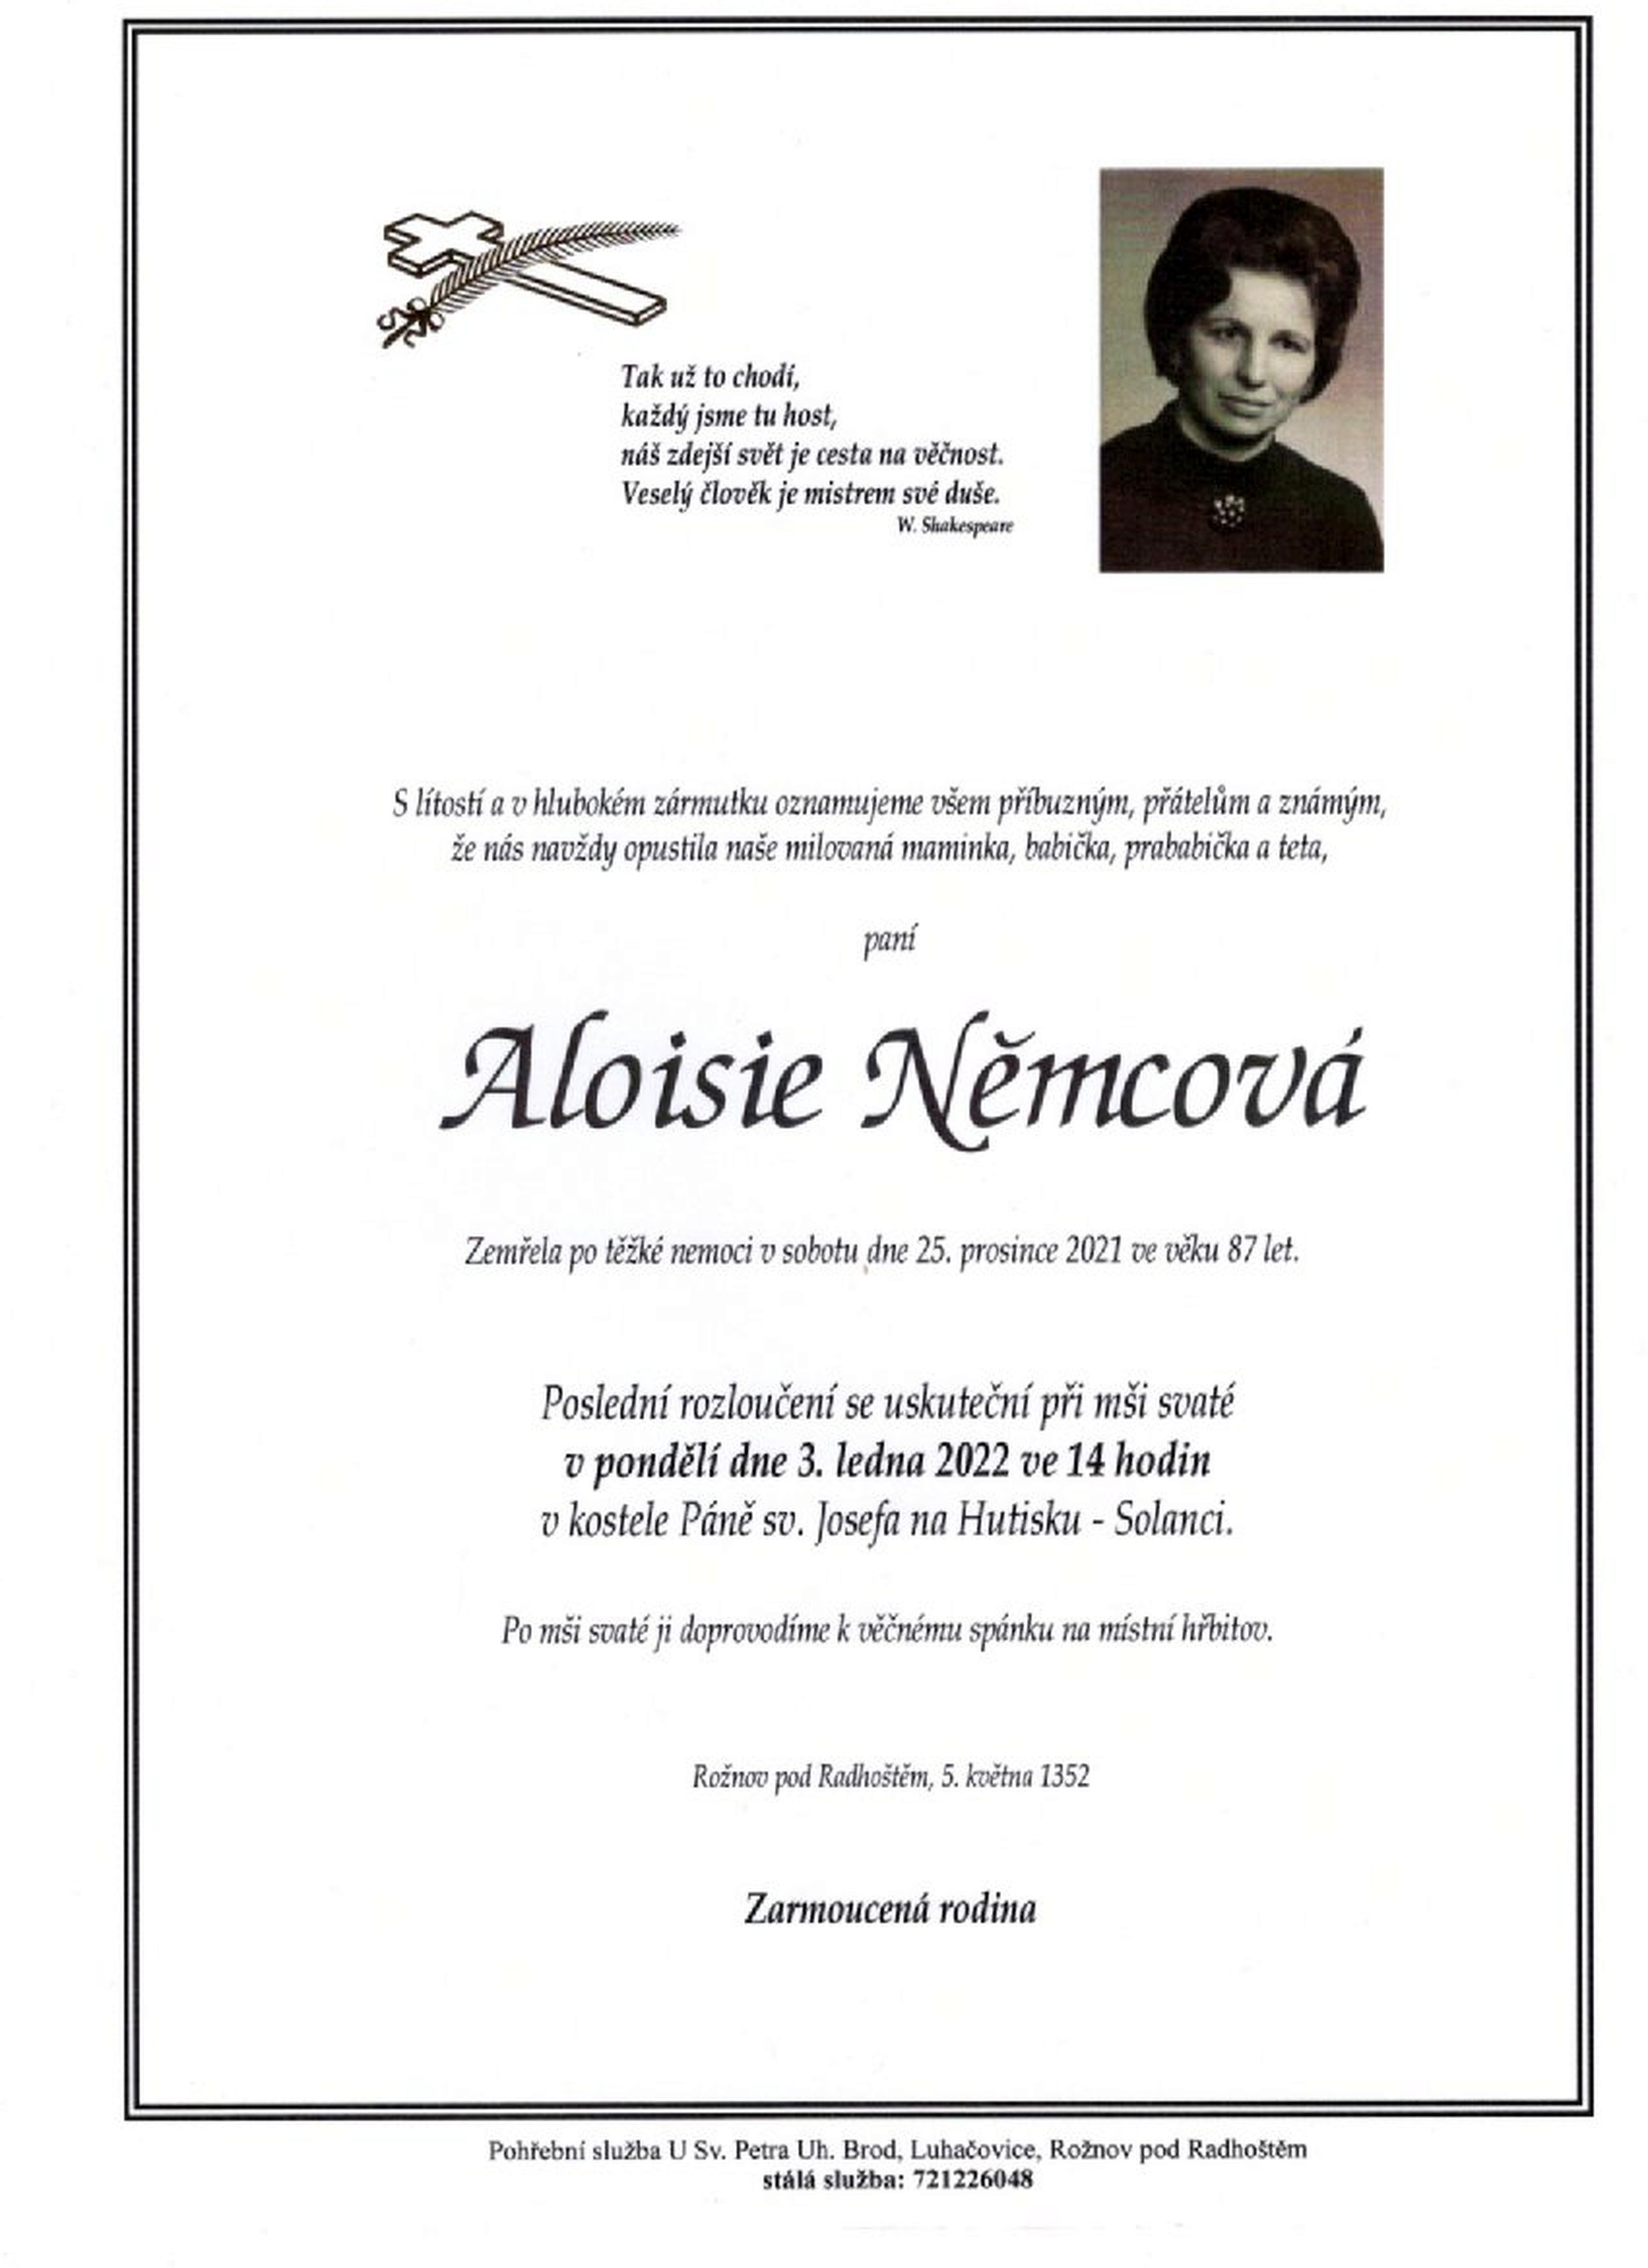 Aloisie Němcová